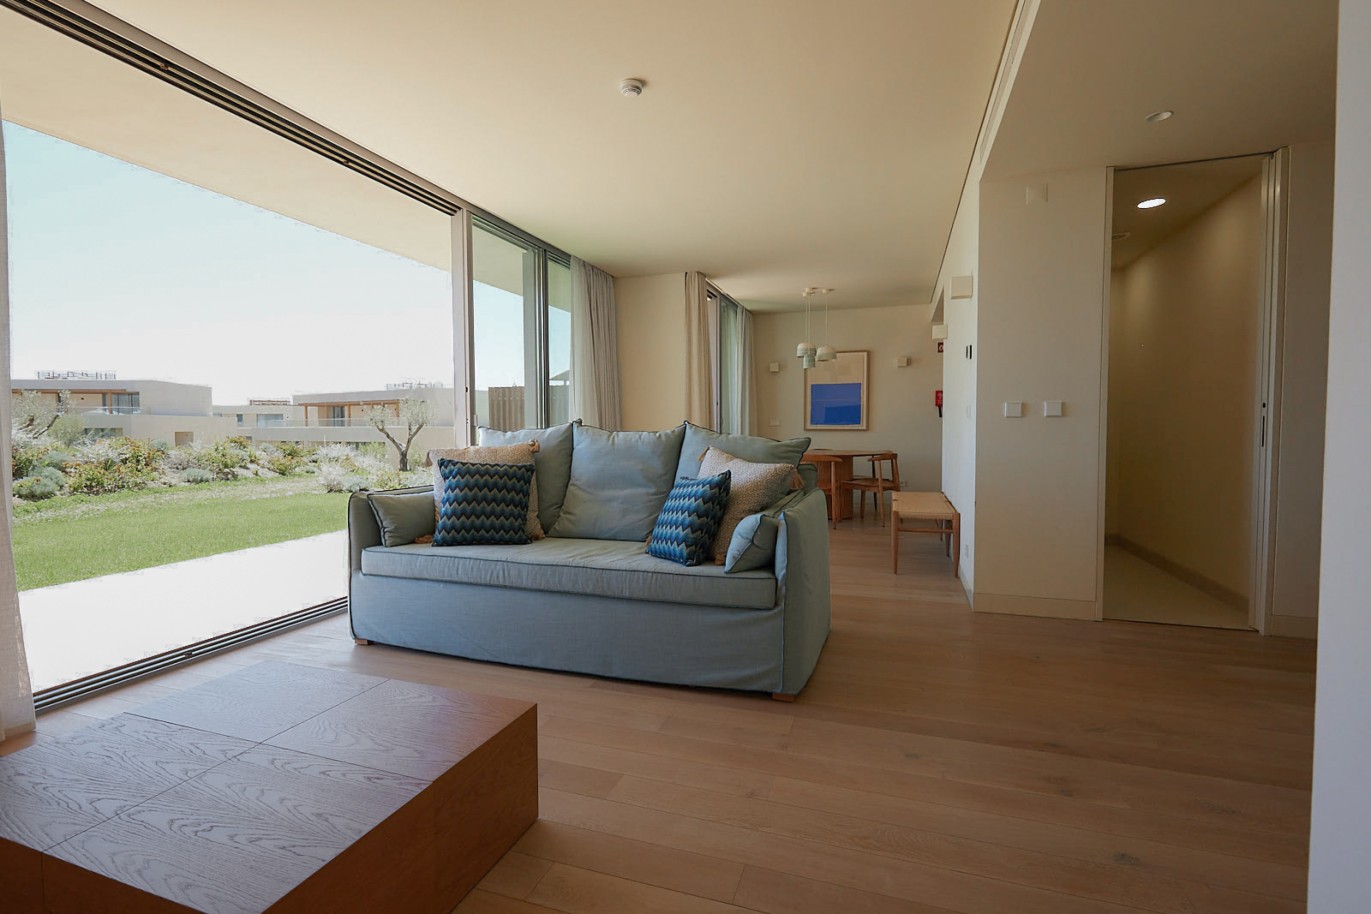 Piso de 2 dormitorios en complejo, en venta en Porches, Algarve_230774